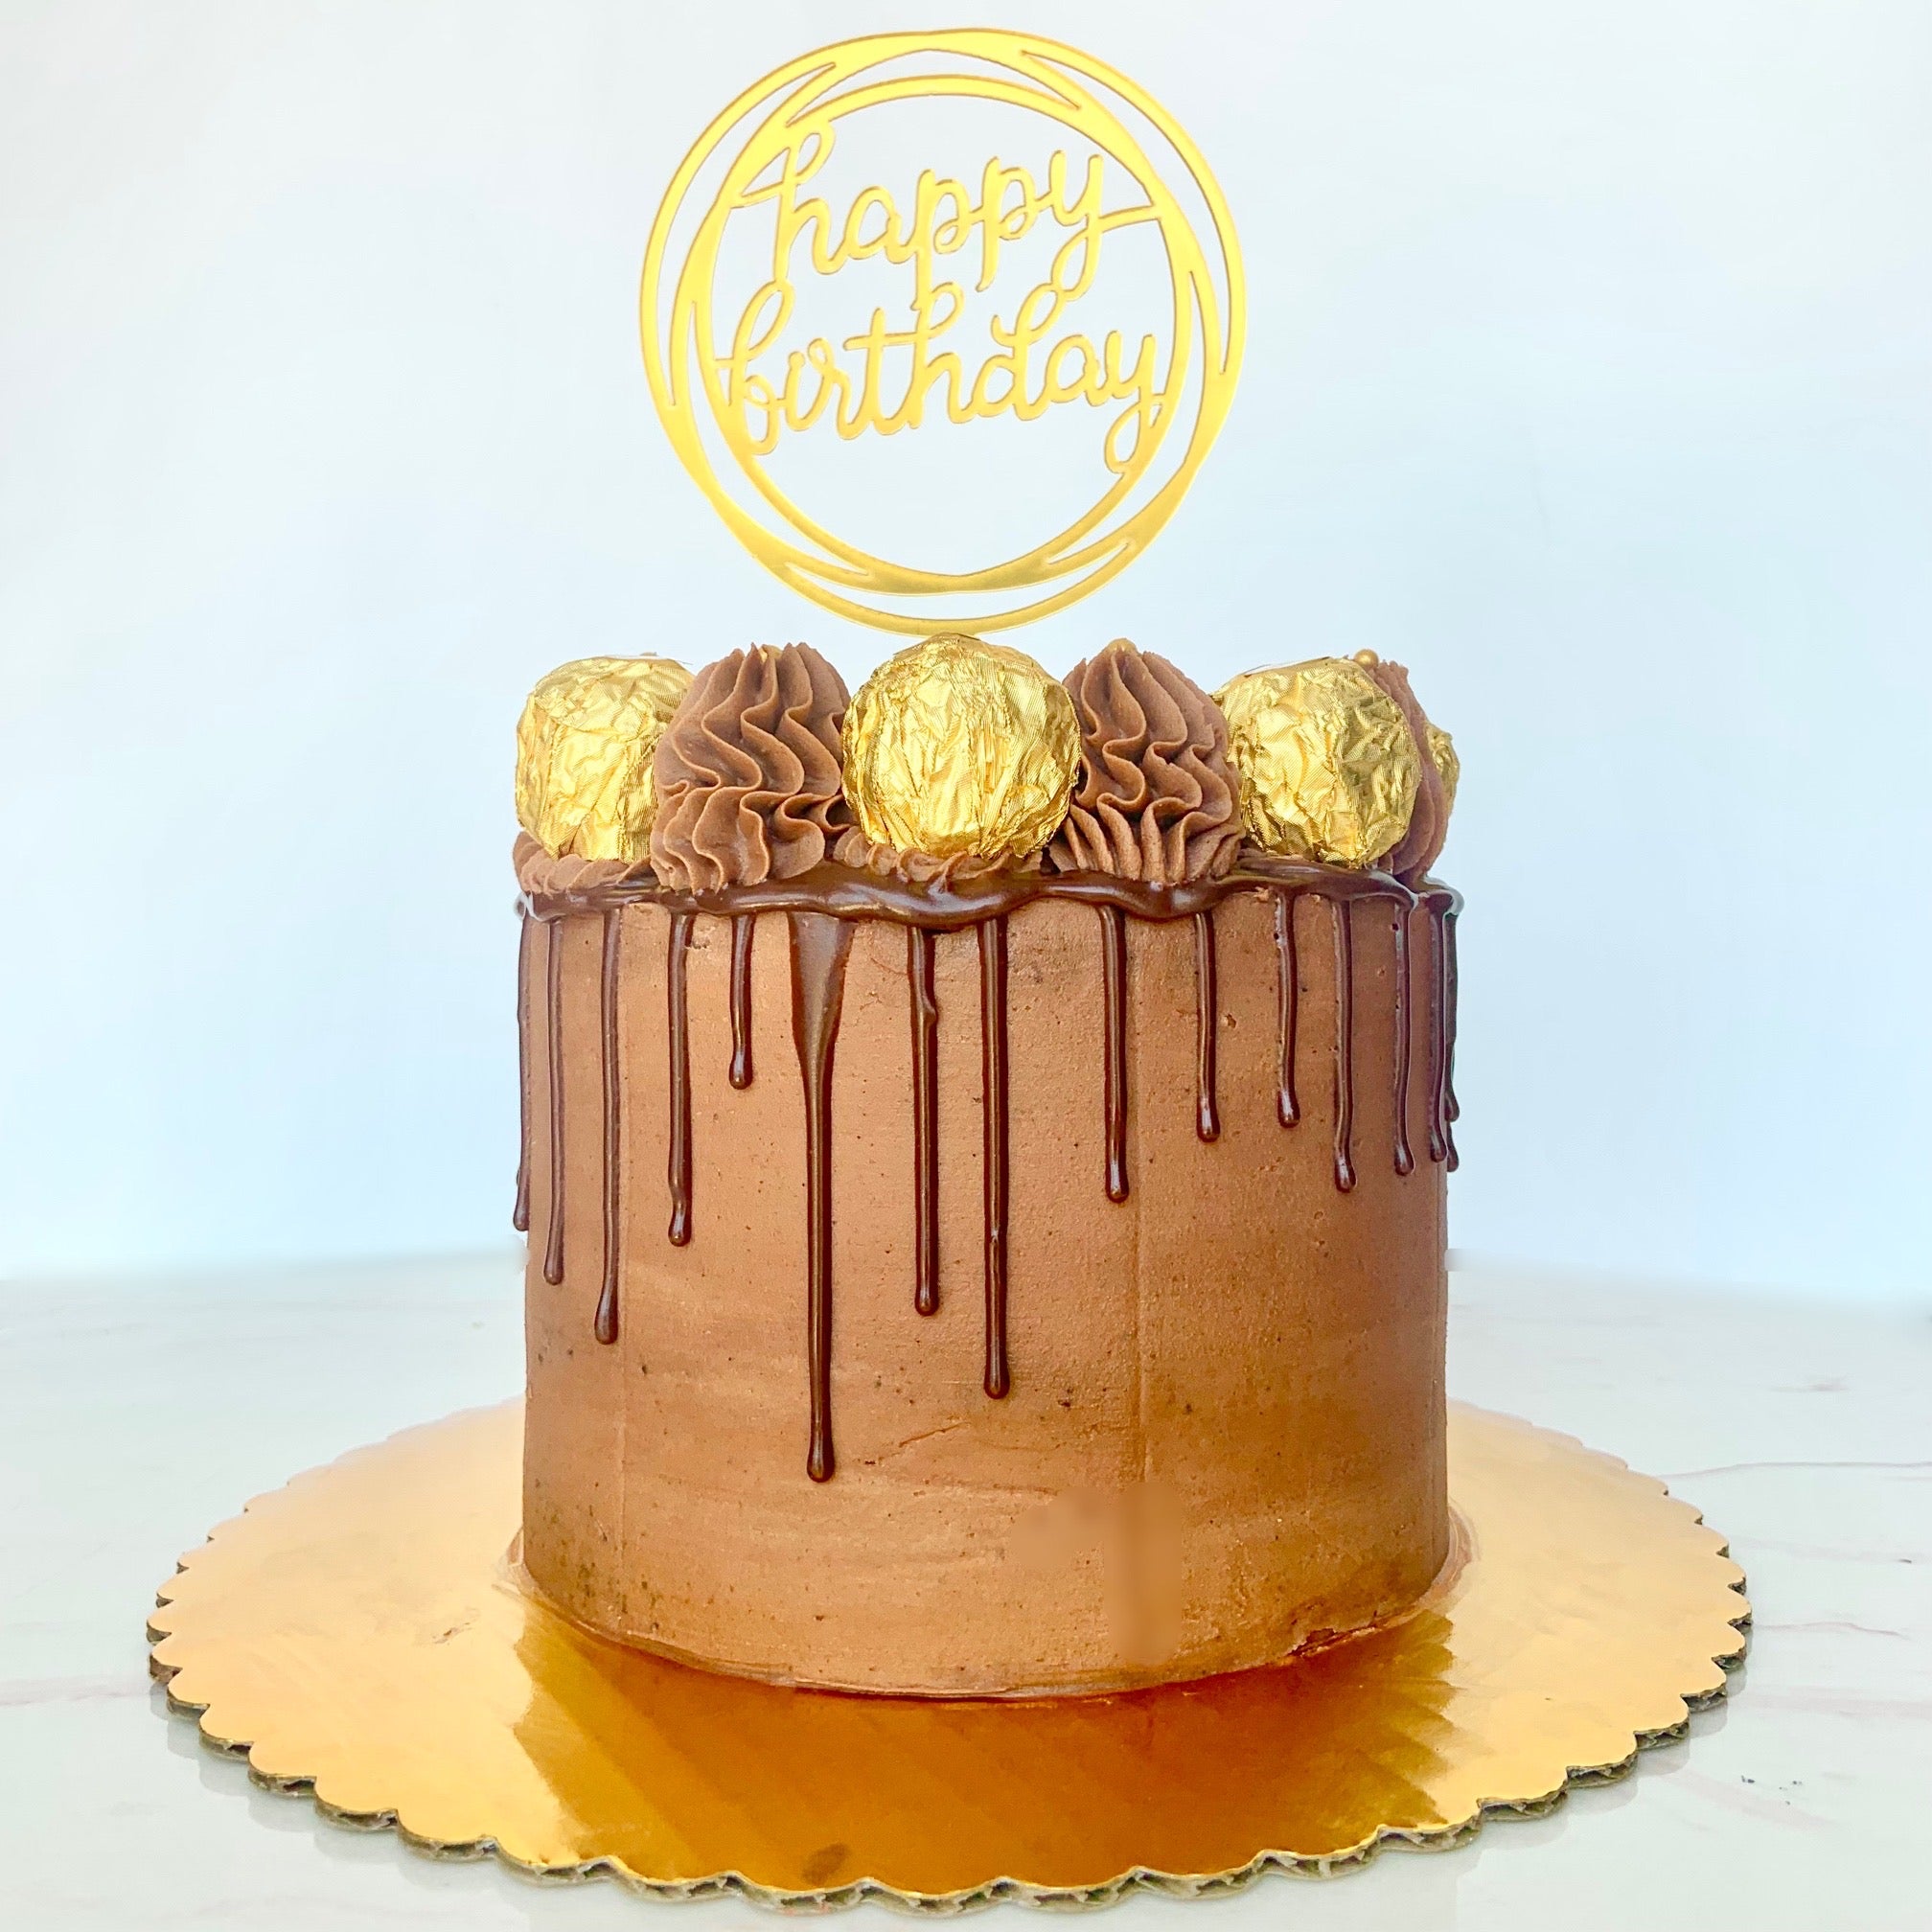 Ferrero Cake – Send a Cake to Greece!